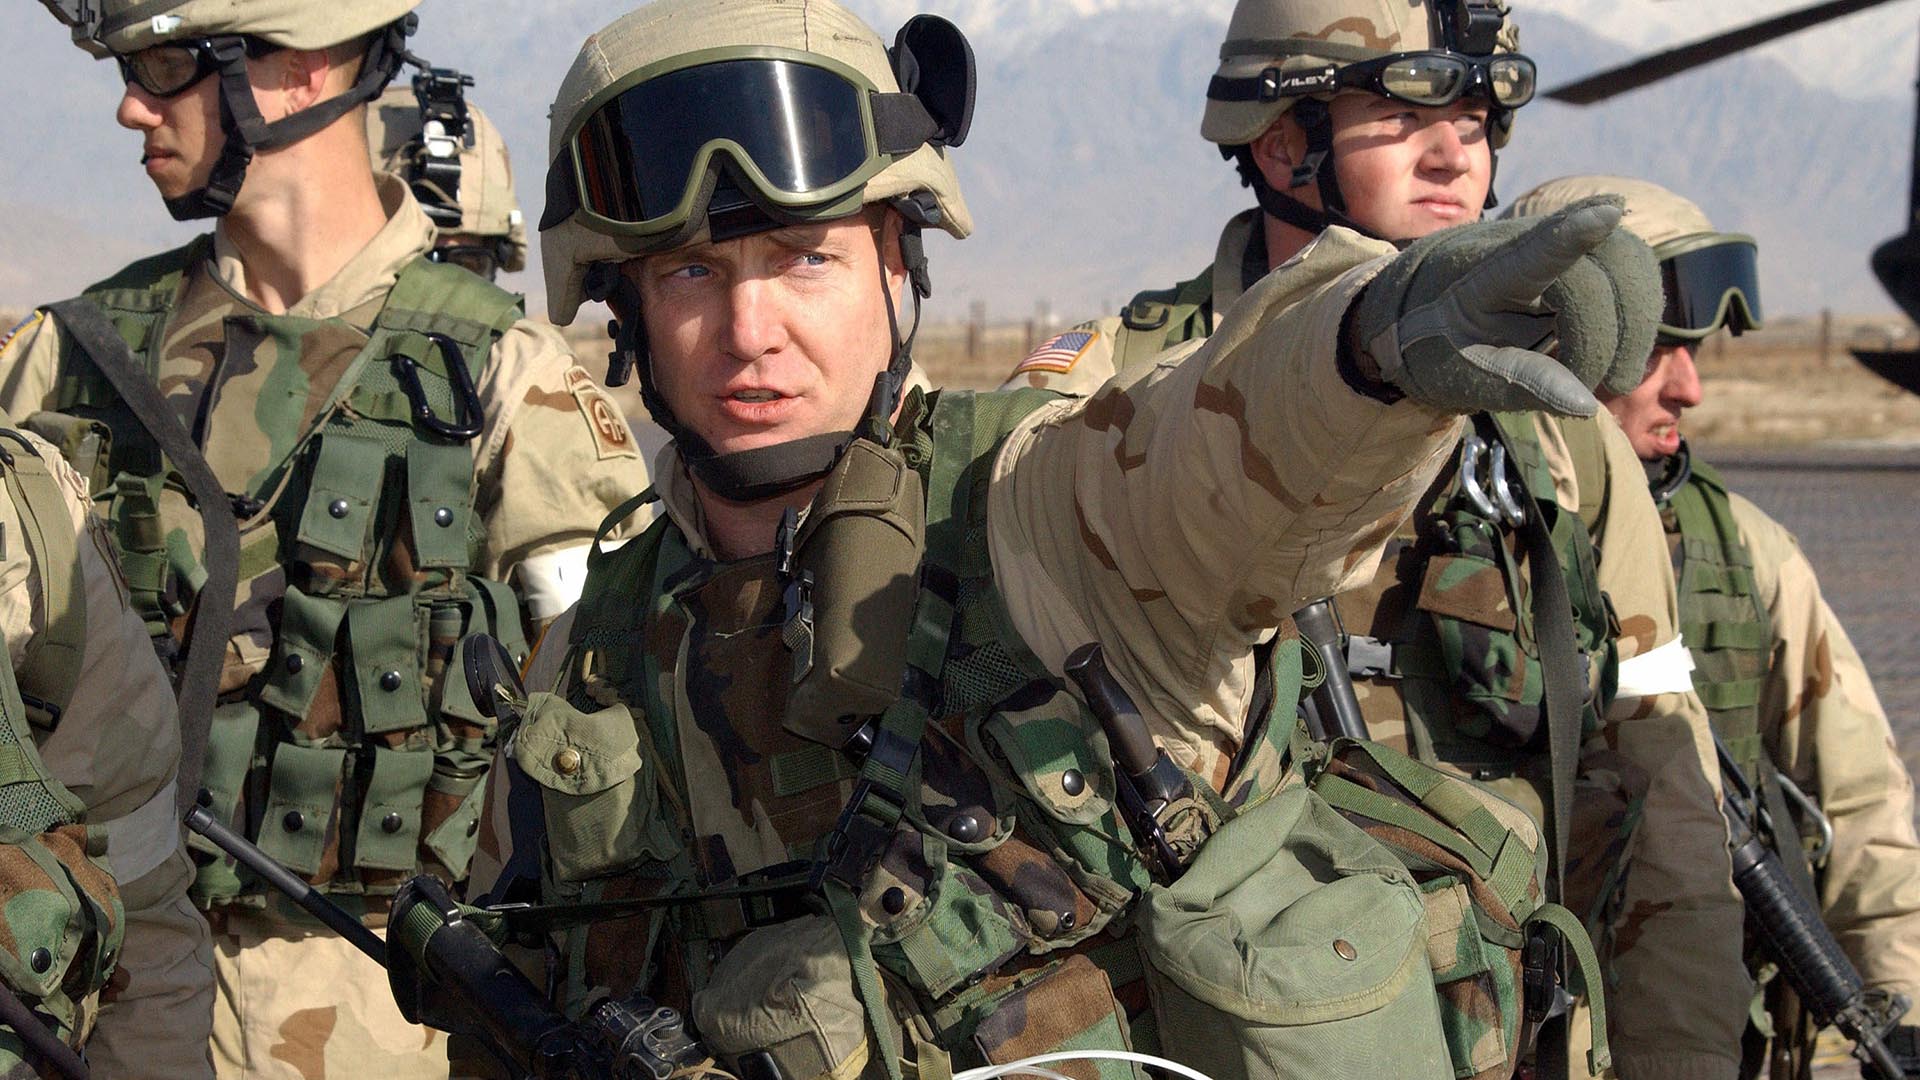 Soldados del 504o Regimiento de Infantería de Paracaidistas de la 82a División Aerotransportada realizan una misión de la Fuerza de Reacción Rápida en el Aeródromo de Bagram en Kabul, Afganistán. 8 de enero de 2002. (Everett/Shutterstock)